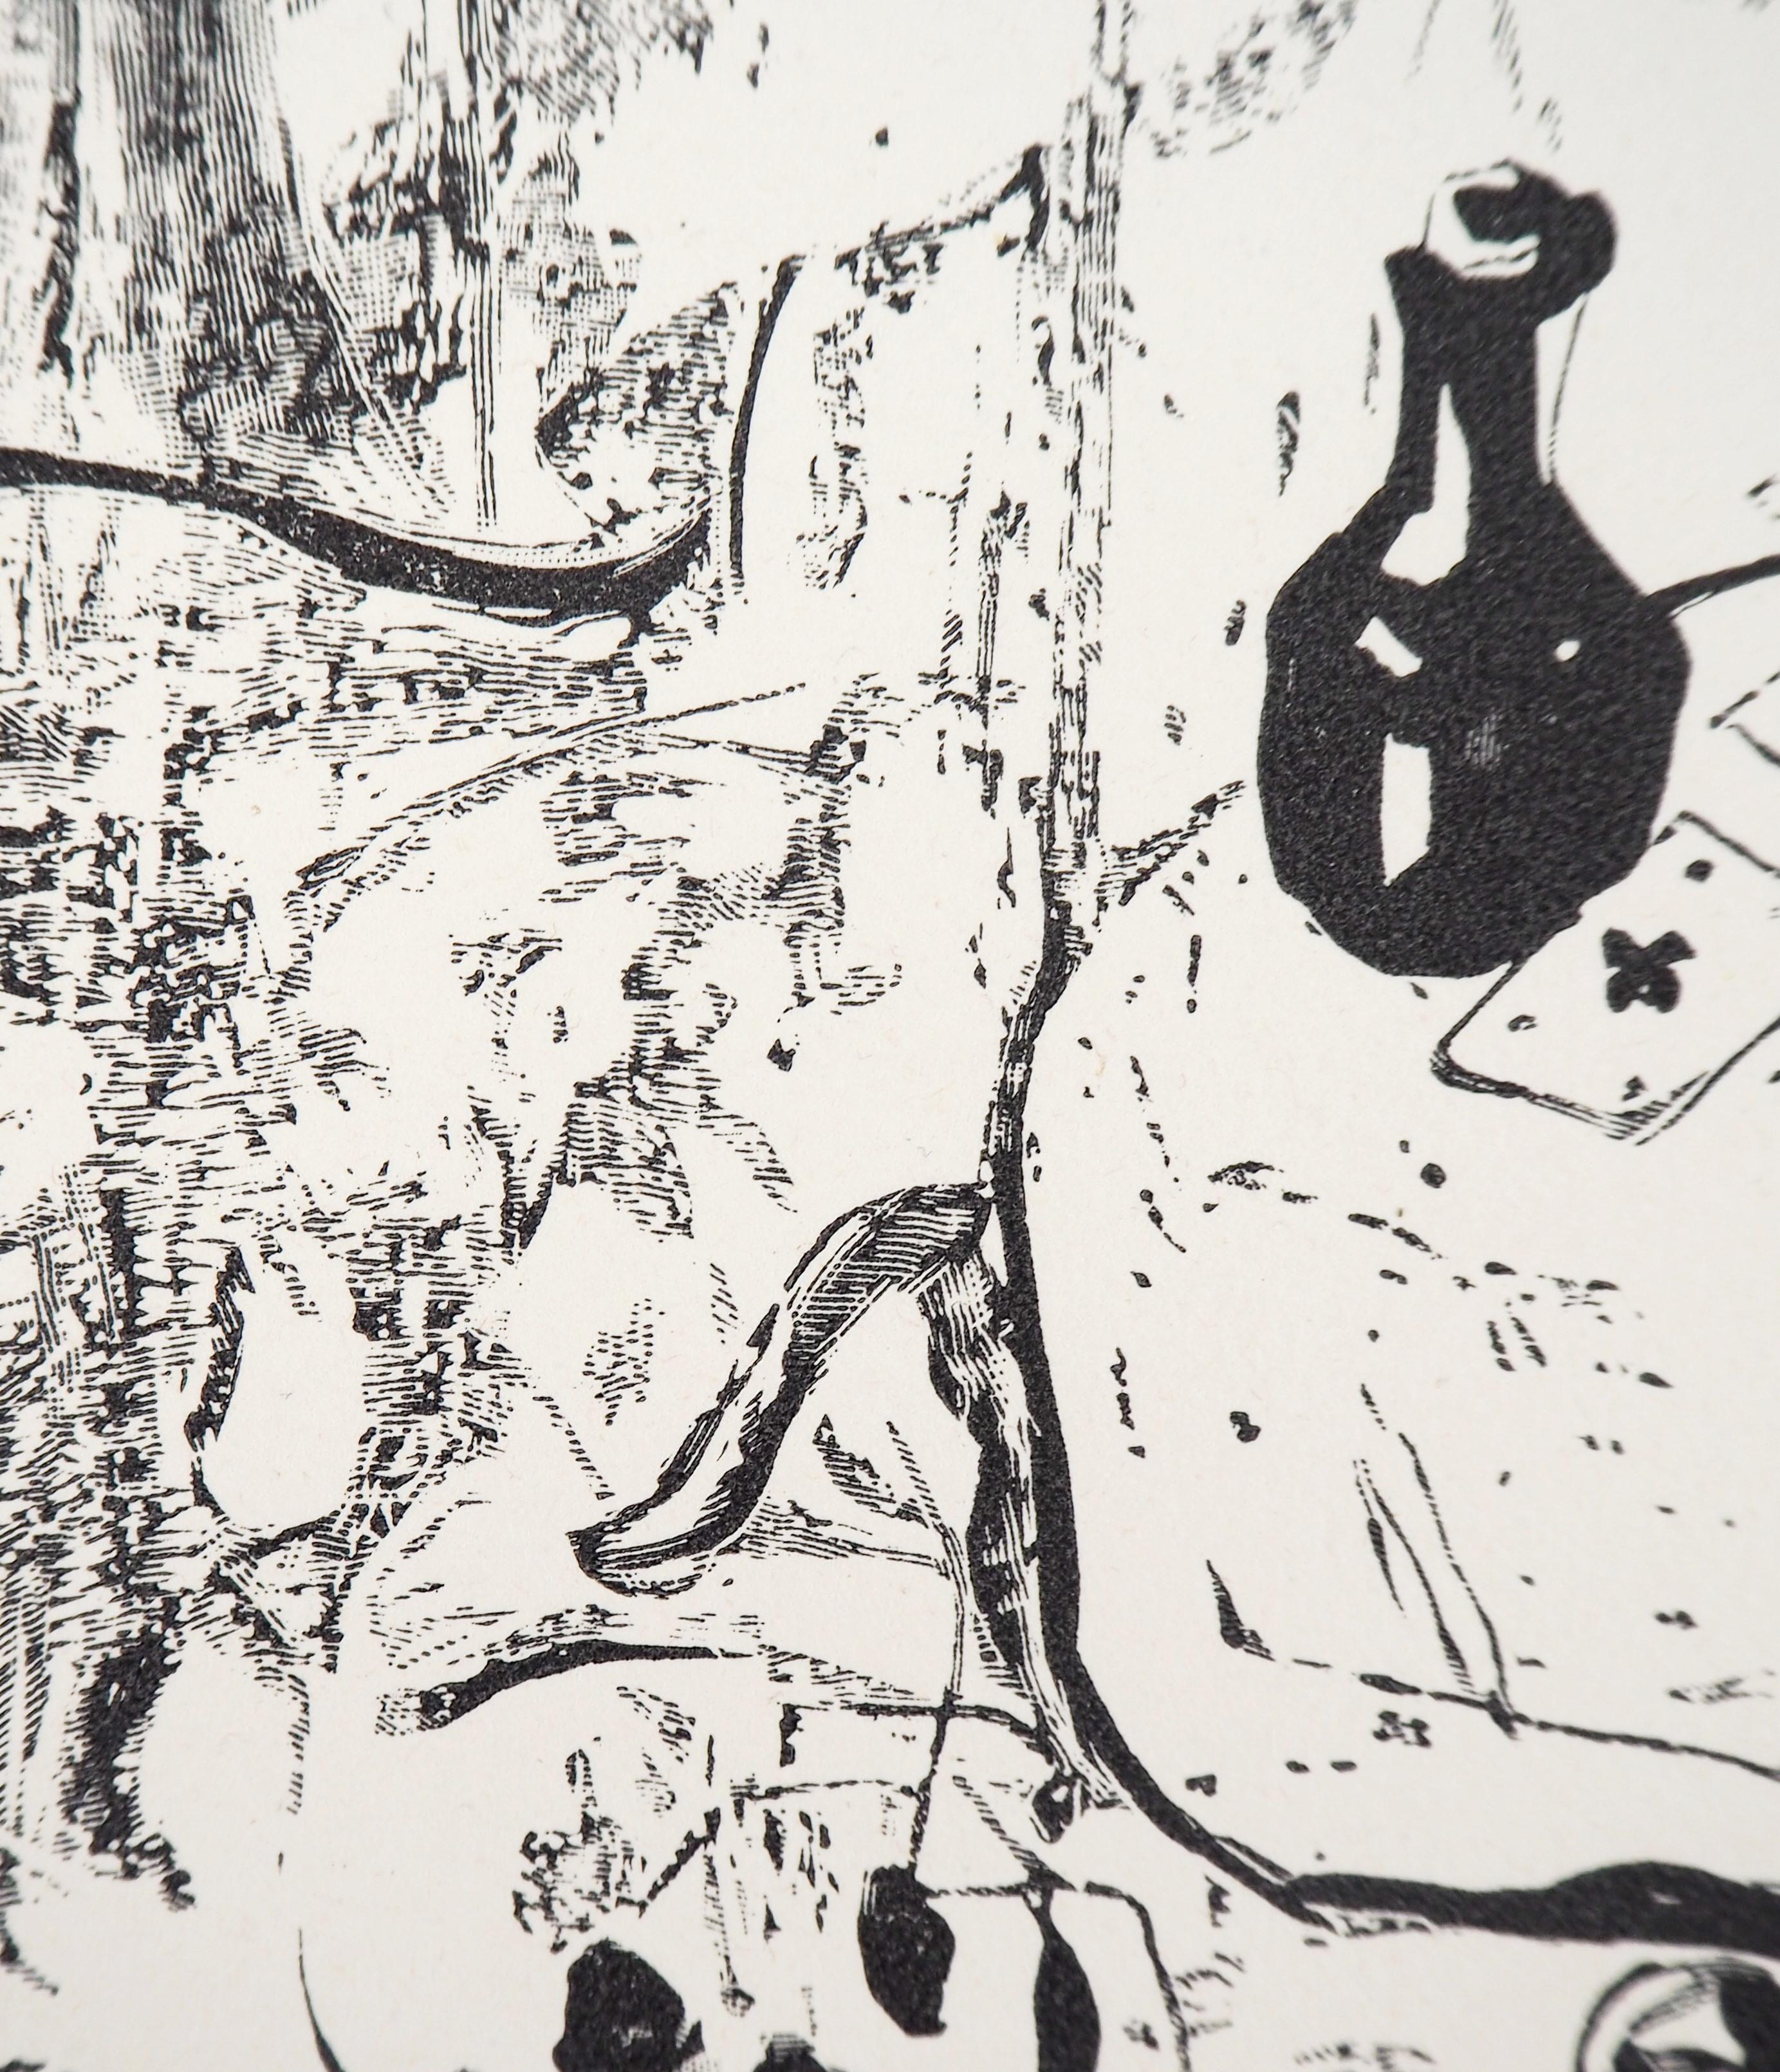 Leonard Tsuguharu FOUJITA
Der Wahrsager, 1960

Original Holzschnitt
Unterschrift in der Platte gedruckt
Auf Vellum 37 x 28 cm (ca. 15 x 11 Zoll)

REFERENZEN : Gesamtkatalog Sylvie Buisson #60.109

Ausgezeichneter Zustand